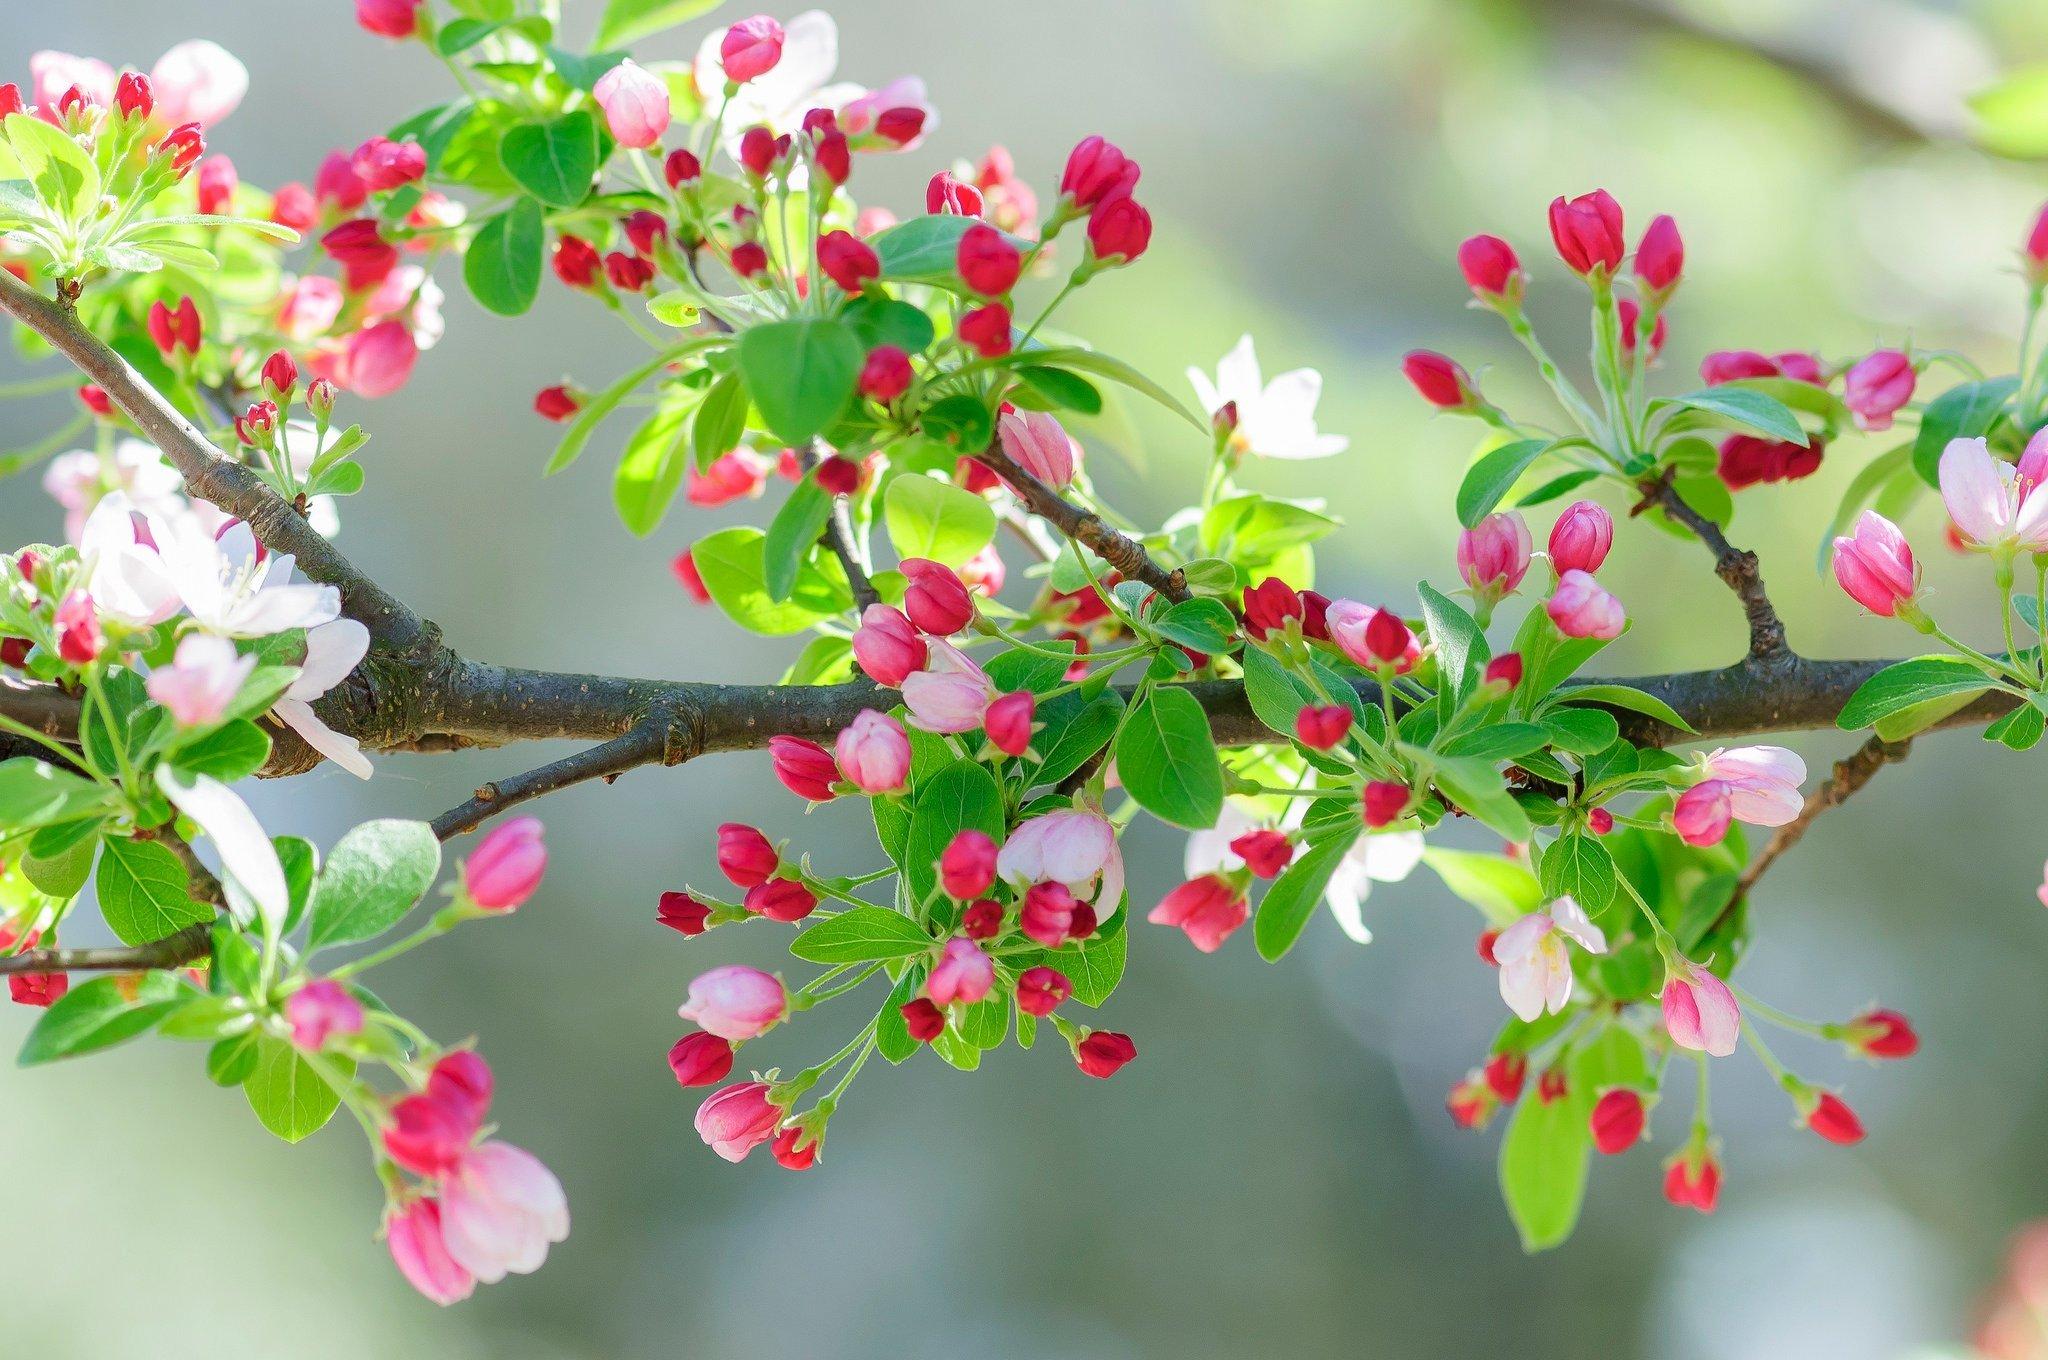 Обои на рабочий стол Цветущие весной деревья сакуры, обои для рабочего  стола, скачать обои, обои бесплатно